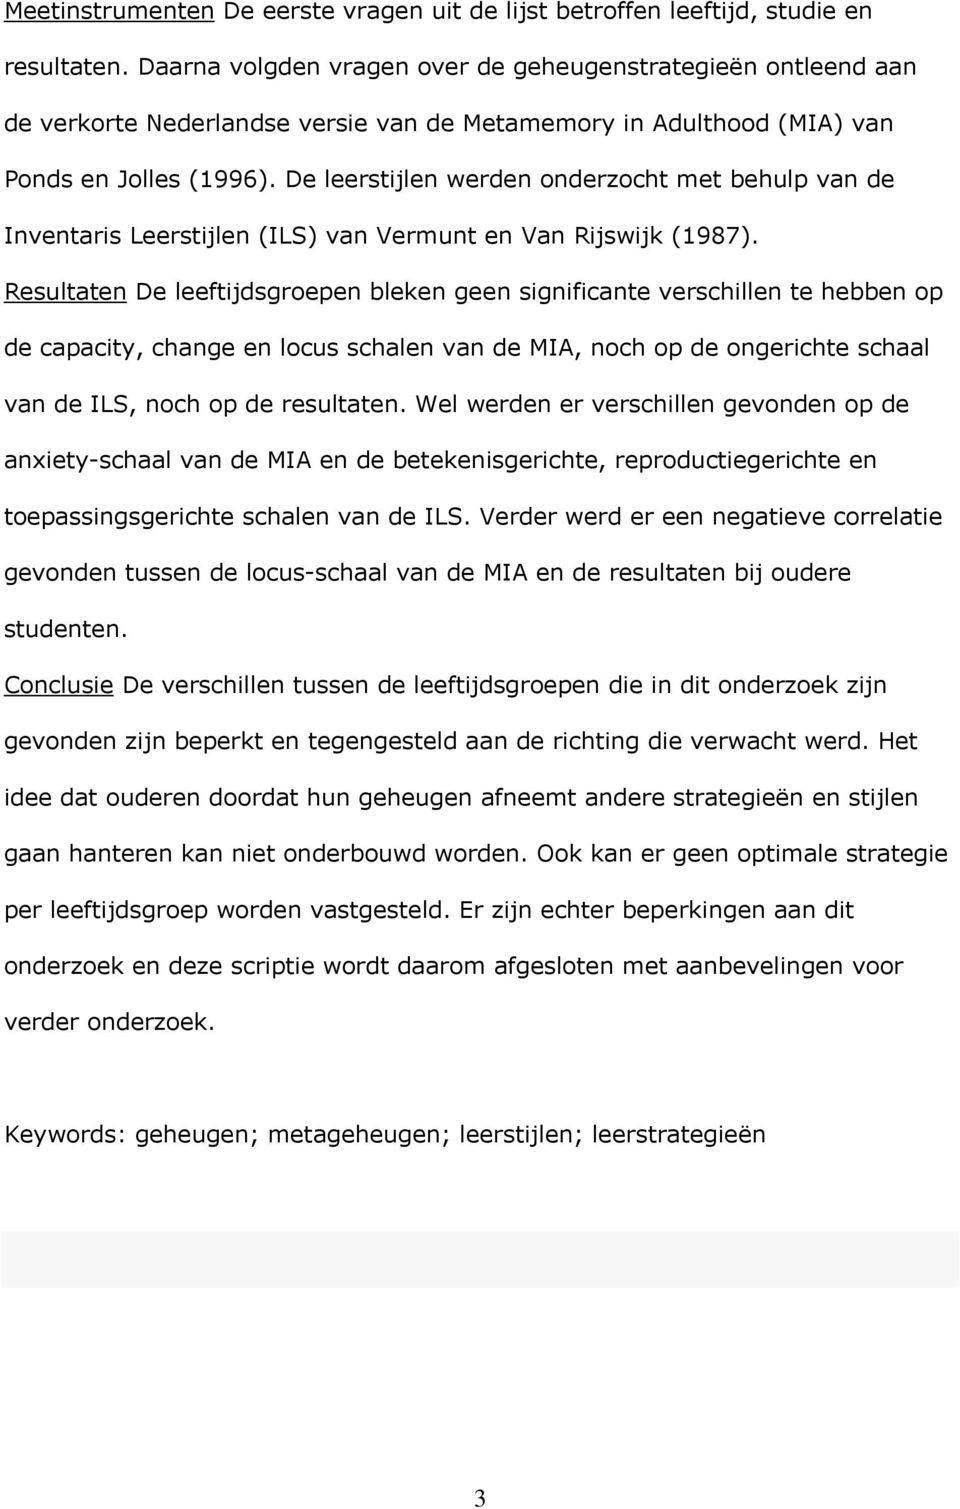 De leerstijlen werden onderzocht met behulp van de Inventaris Leerstijlen (ILS) van Vermunt en Van Rijswijk (1987).